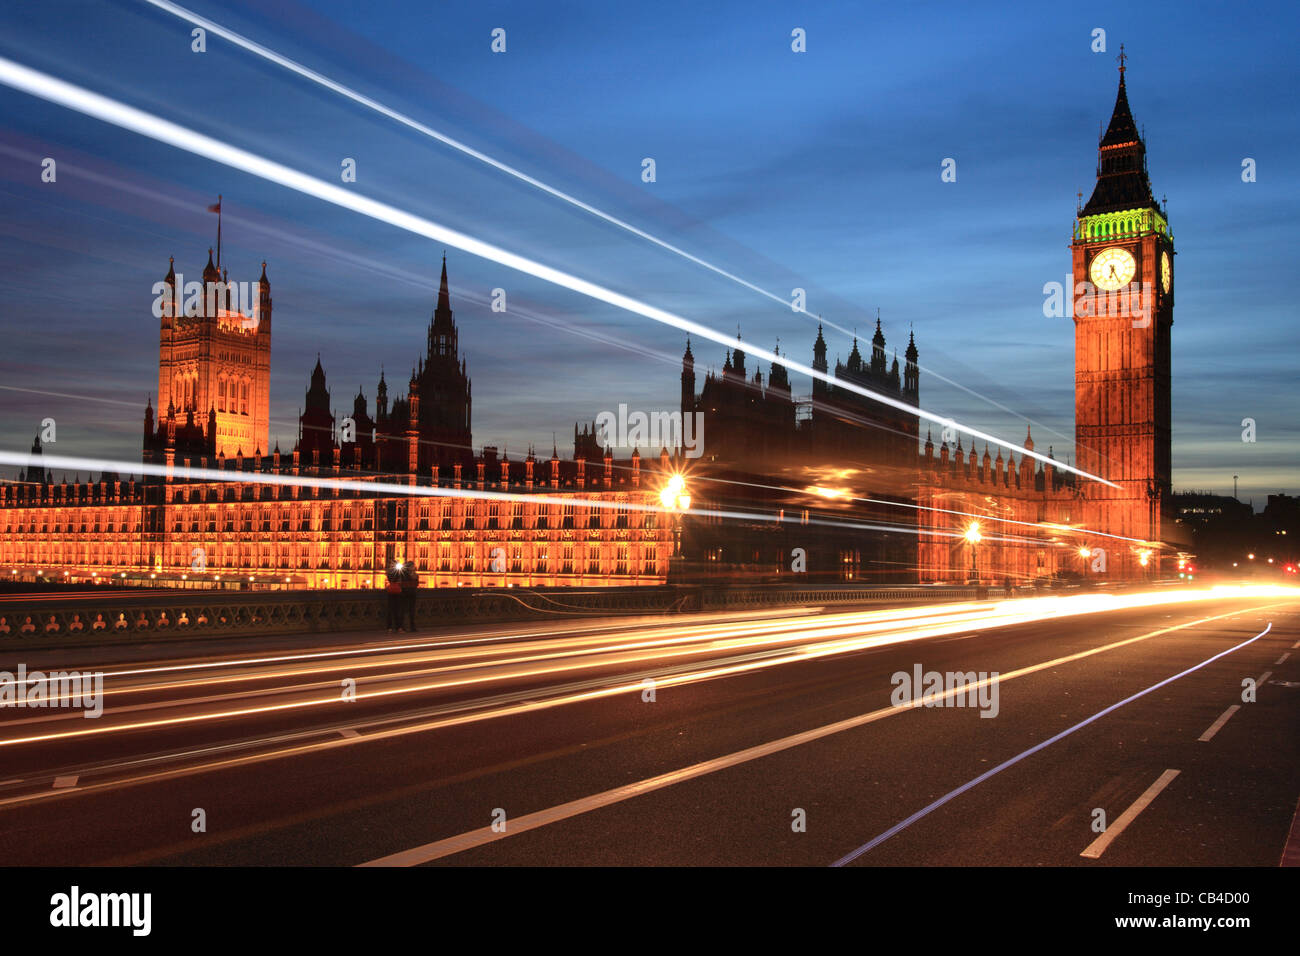 Le pont de Westminster, le trafic pédestre, Big Ben et les chambres du Parlement, Londres, Angleterre, Royaume-Uni Banque D'Images